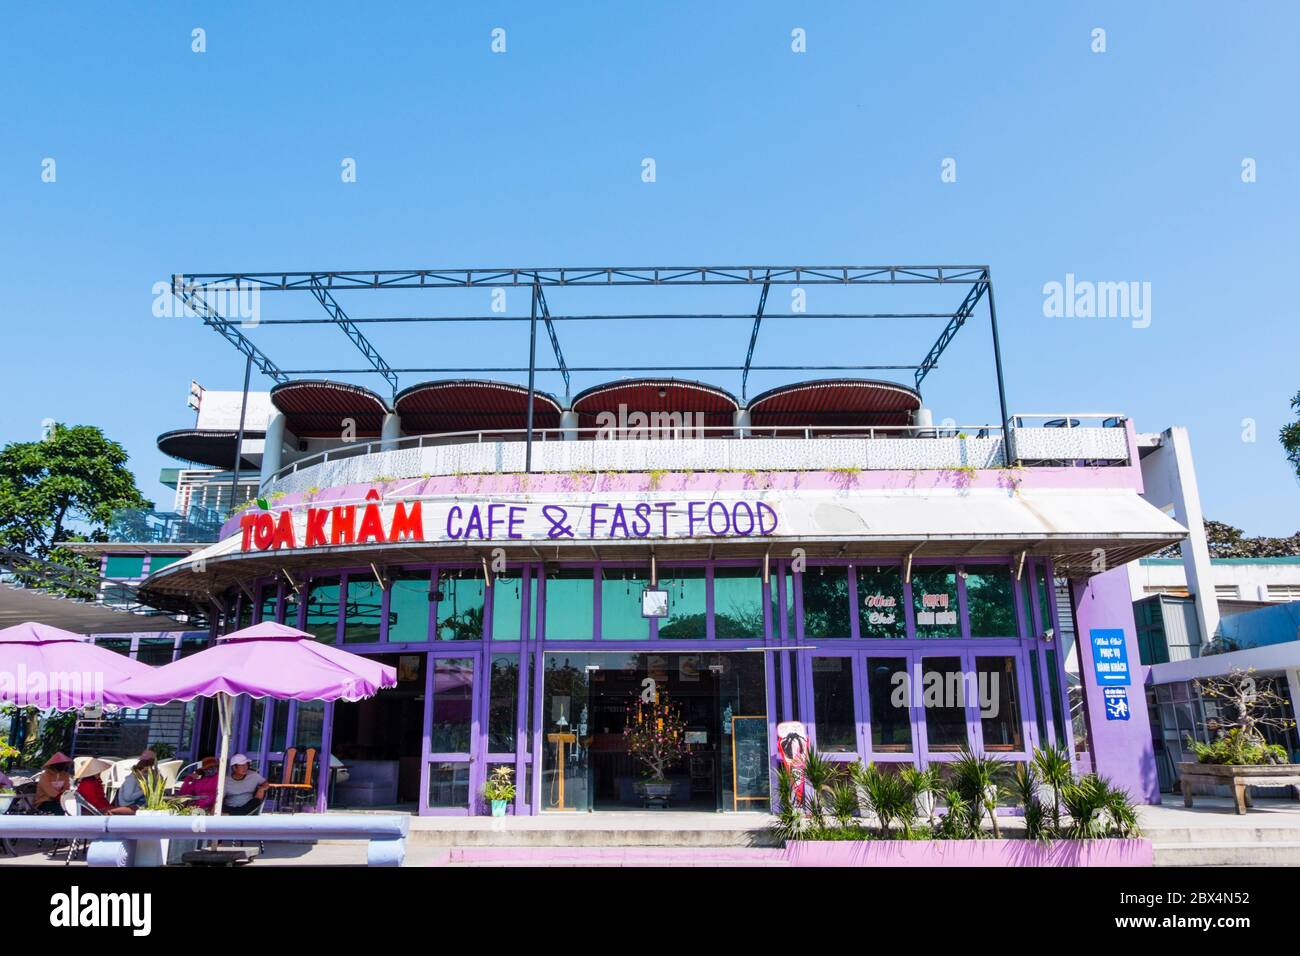 Toa Kham cafe and restaurant, Toa Kham pier, Hue, Vietnam Stock Photo